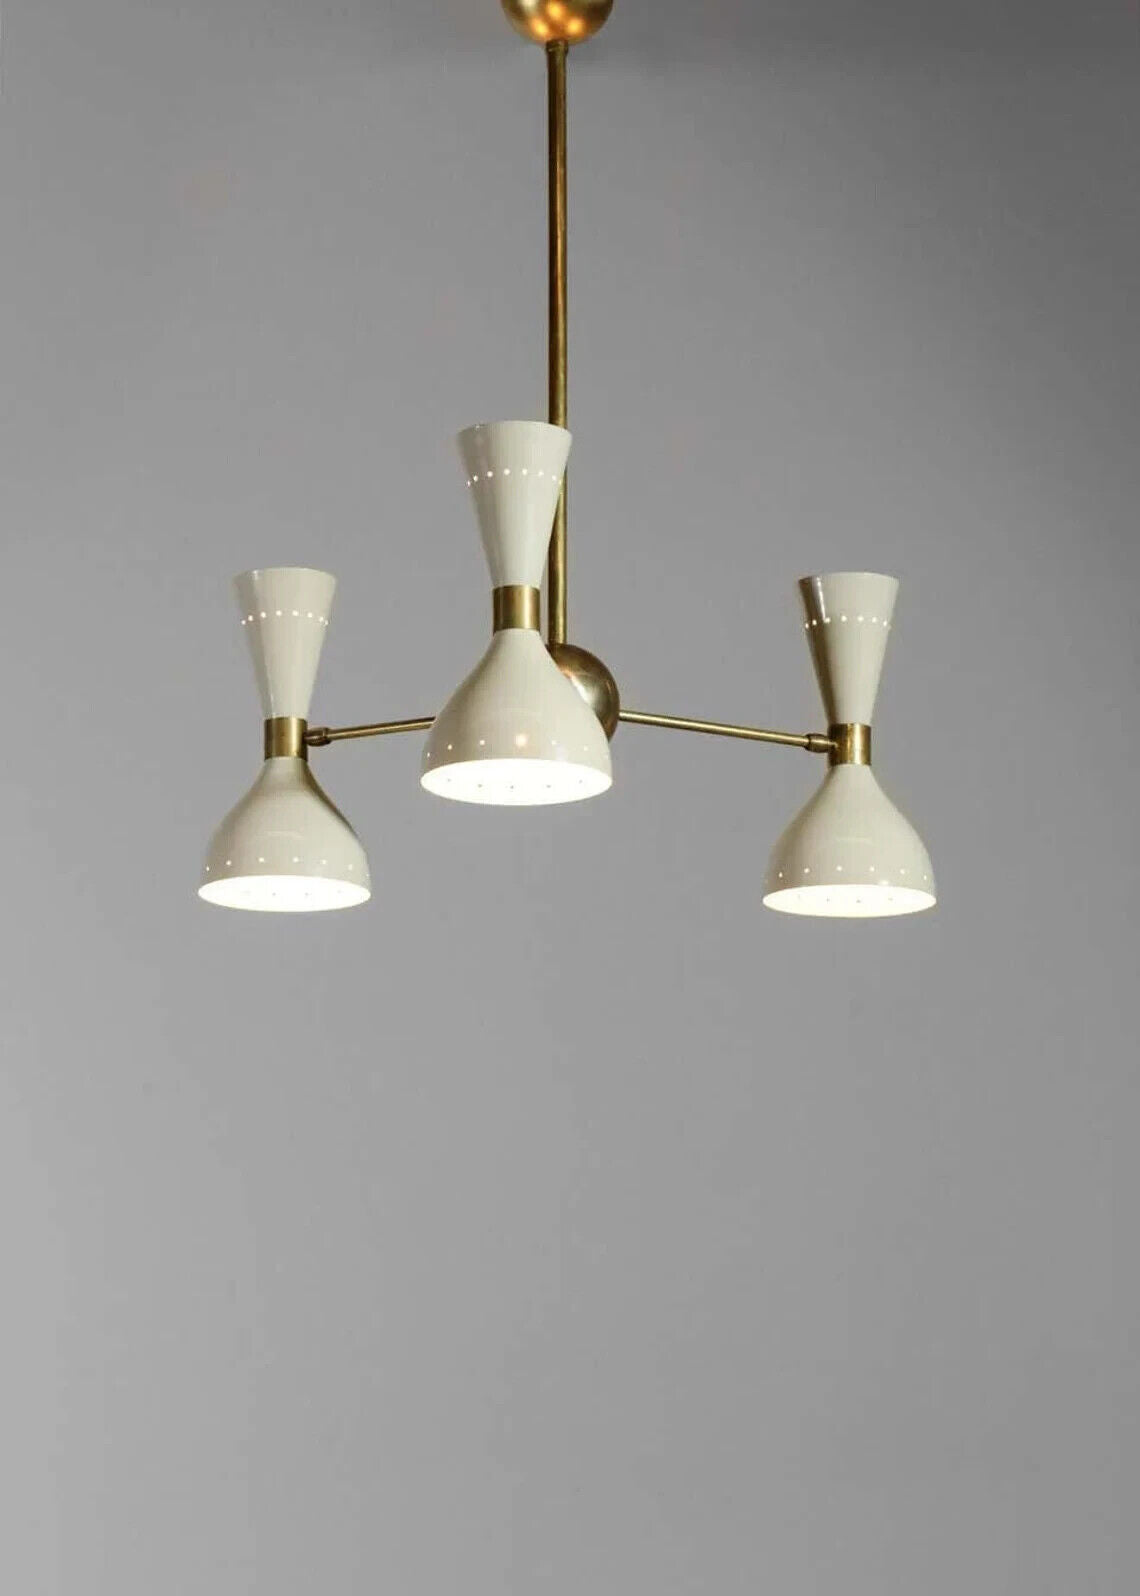 Stilnovo Style 3 Lights Modern Brass Sputnik Chandelier